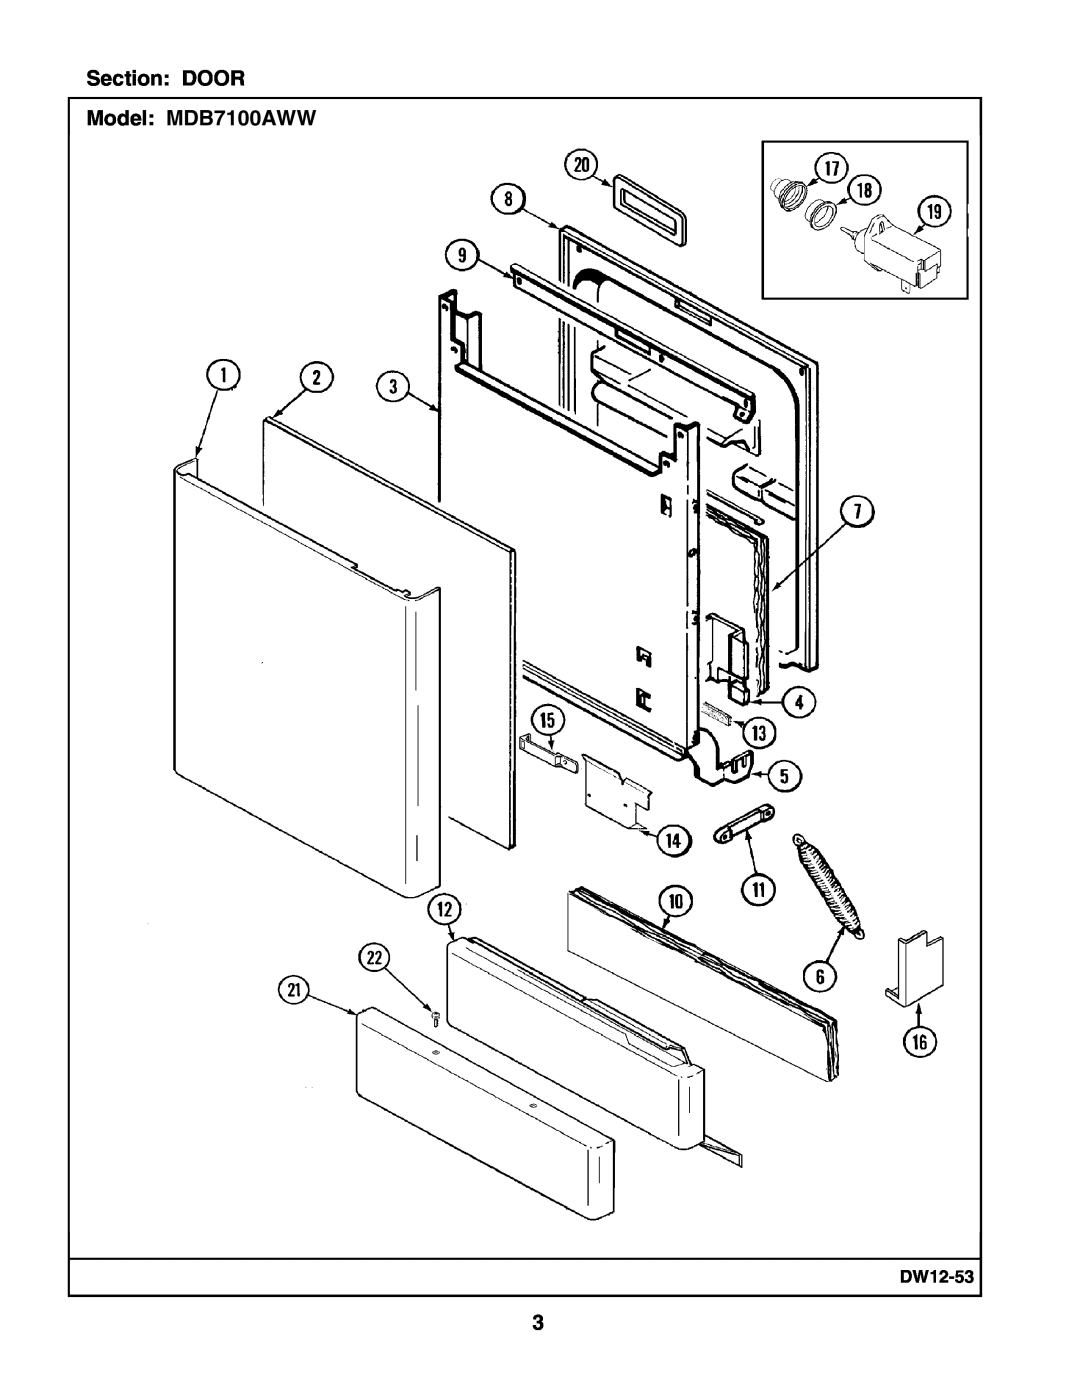 Maytag manual Section DOOR Model MDB7100AWW, DW12-53 